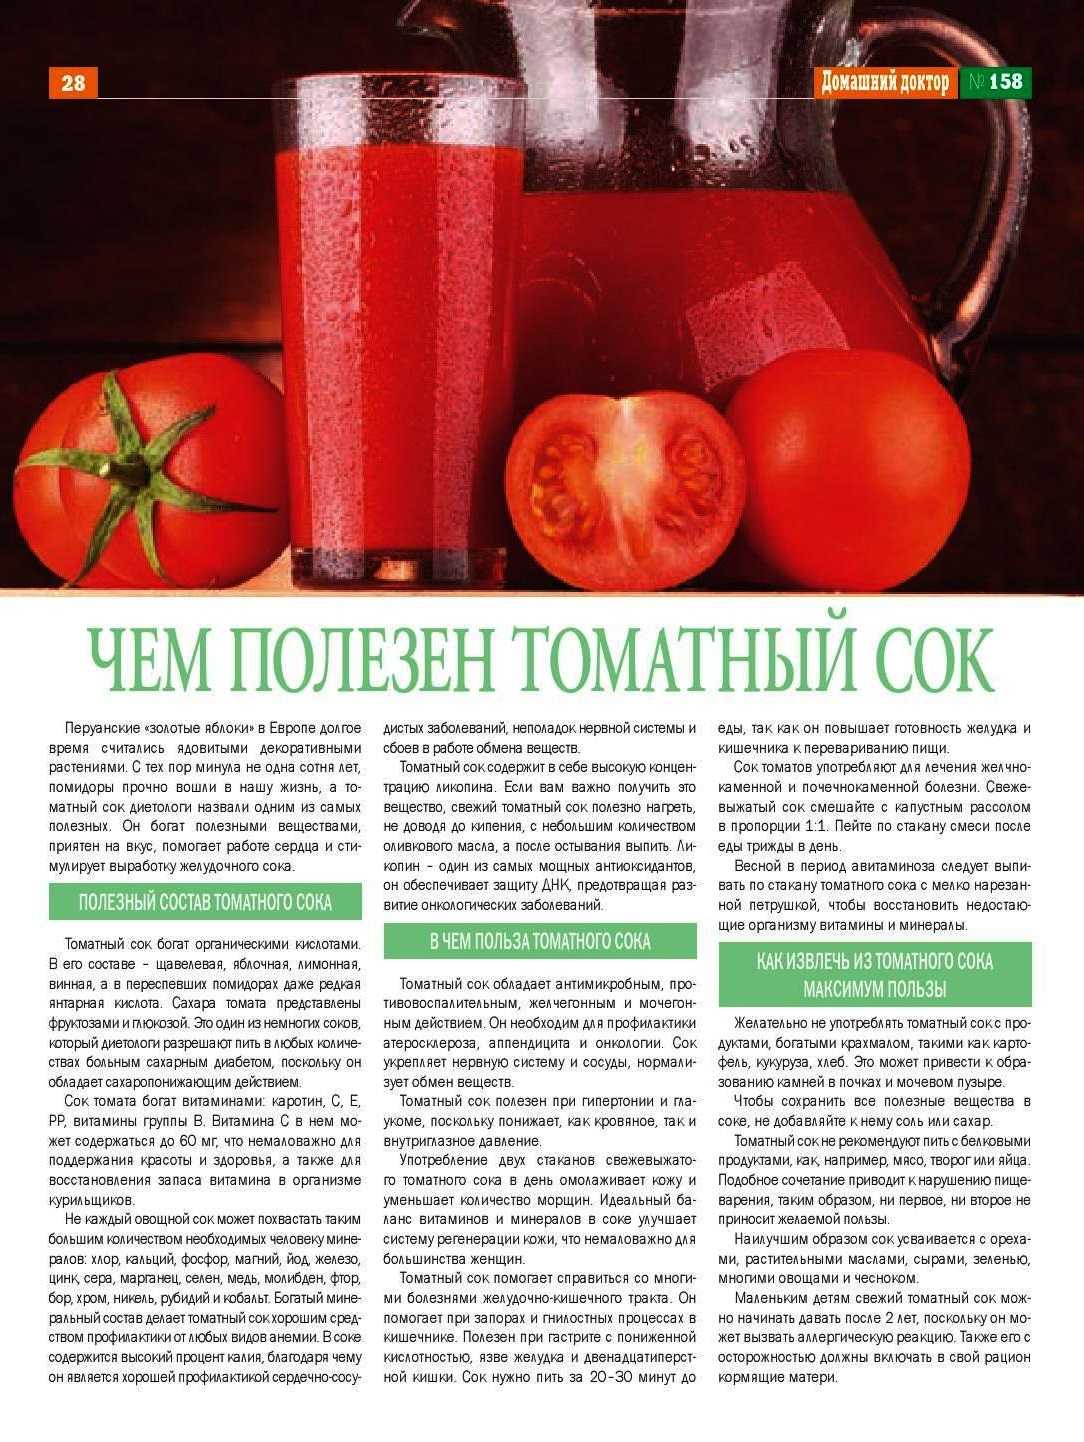 Томатный сок пить на ночь. Чем полезен томатный сок. Чем полезен томатныысок. Чем полезен томатный сок для организма. Сок томатный полезный сок.